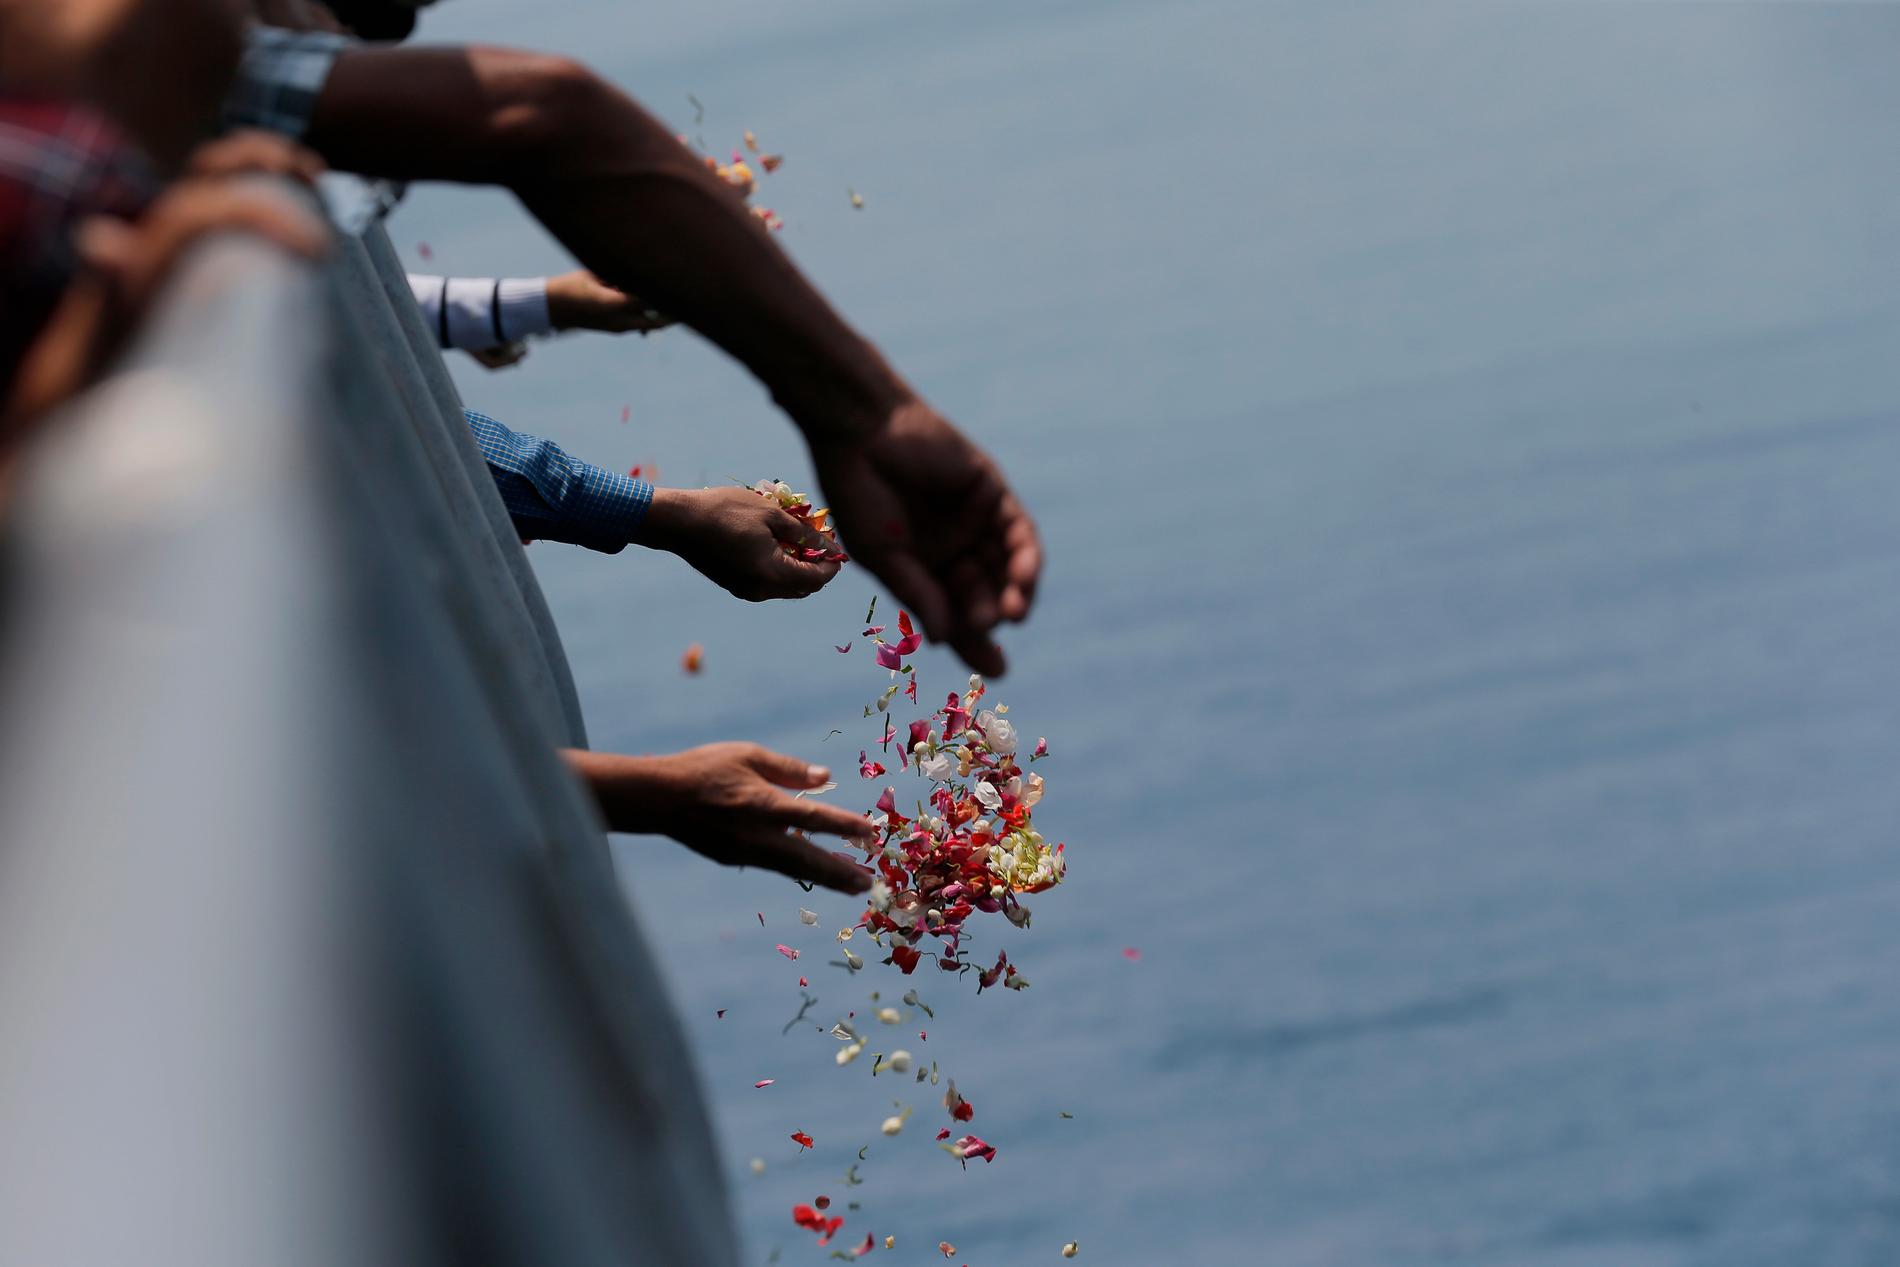 Anhöriga till offren ombord Lion Airs flight JT610 sprider blommor i havet. Arkivbild.